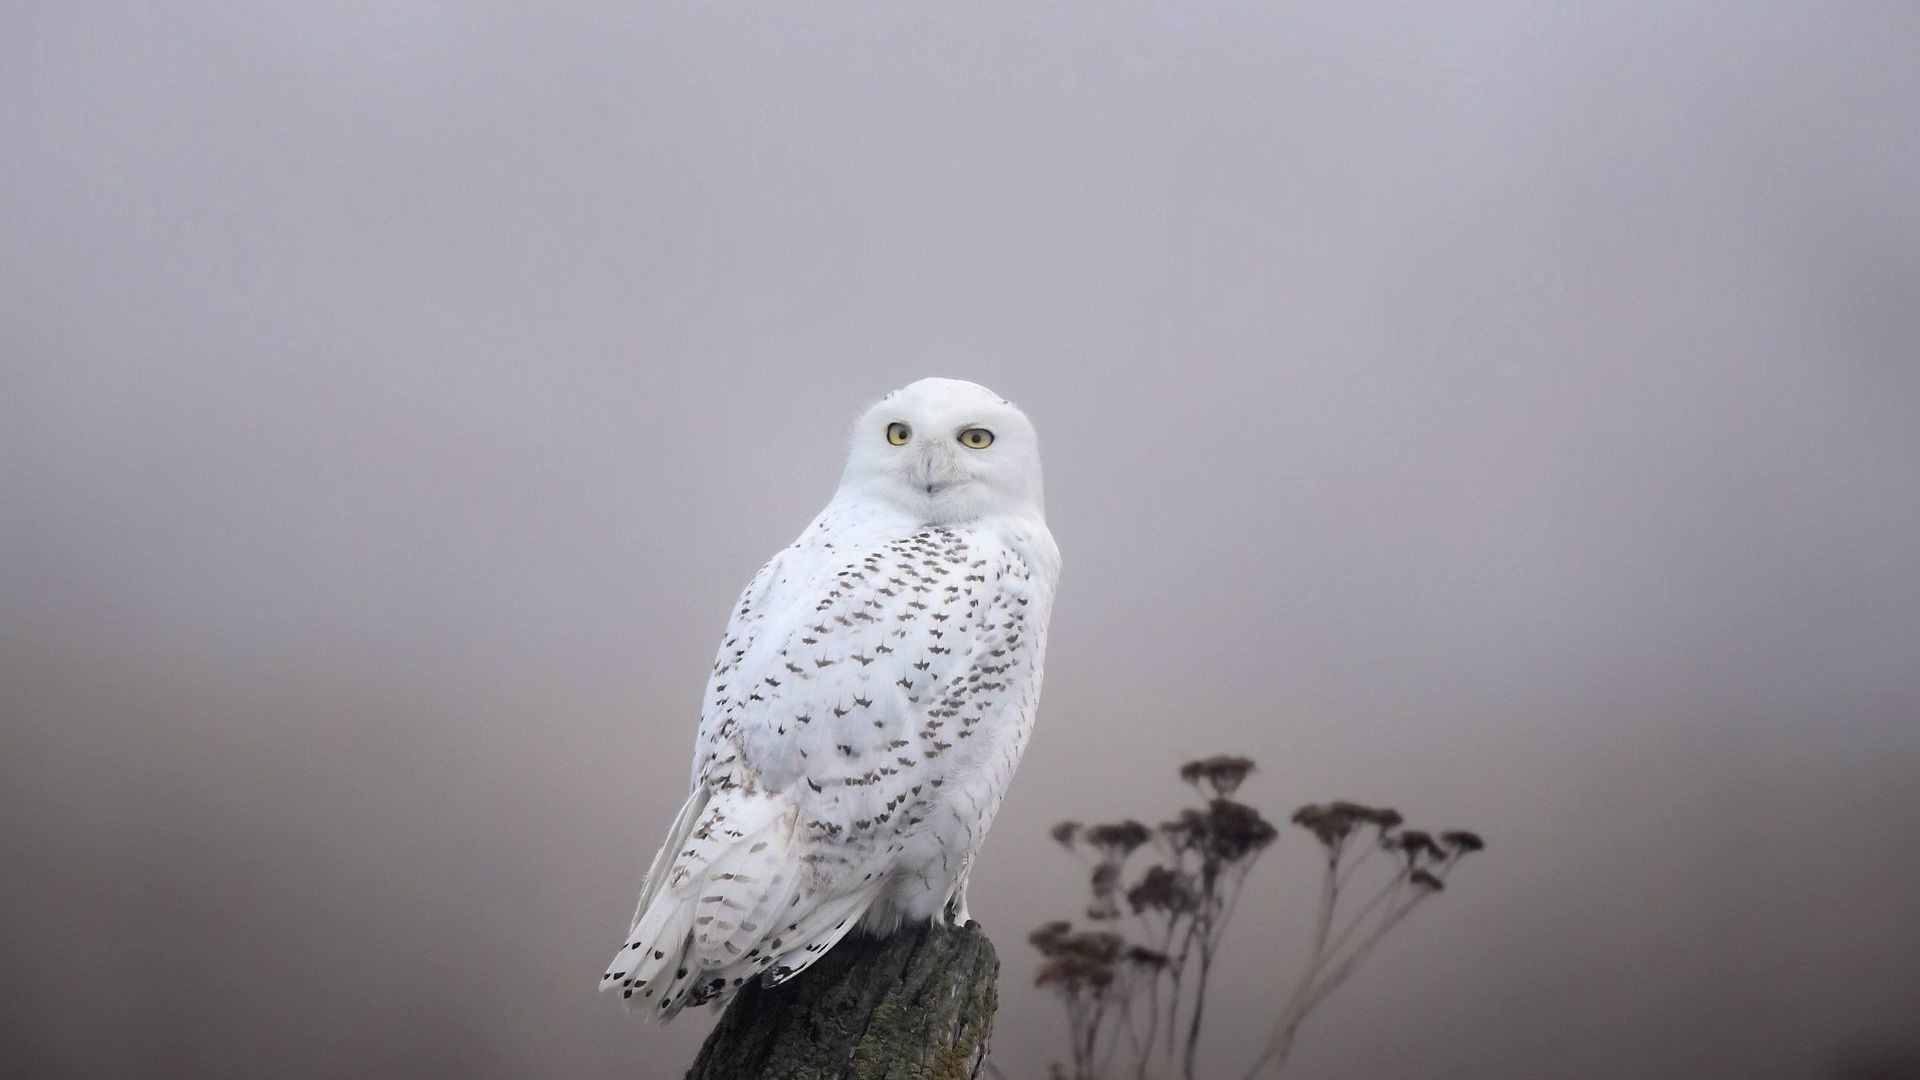 Polar Owl wallpaper for desktop